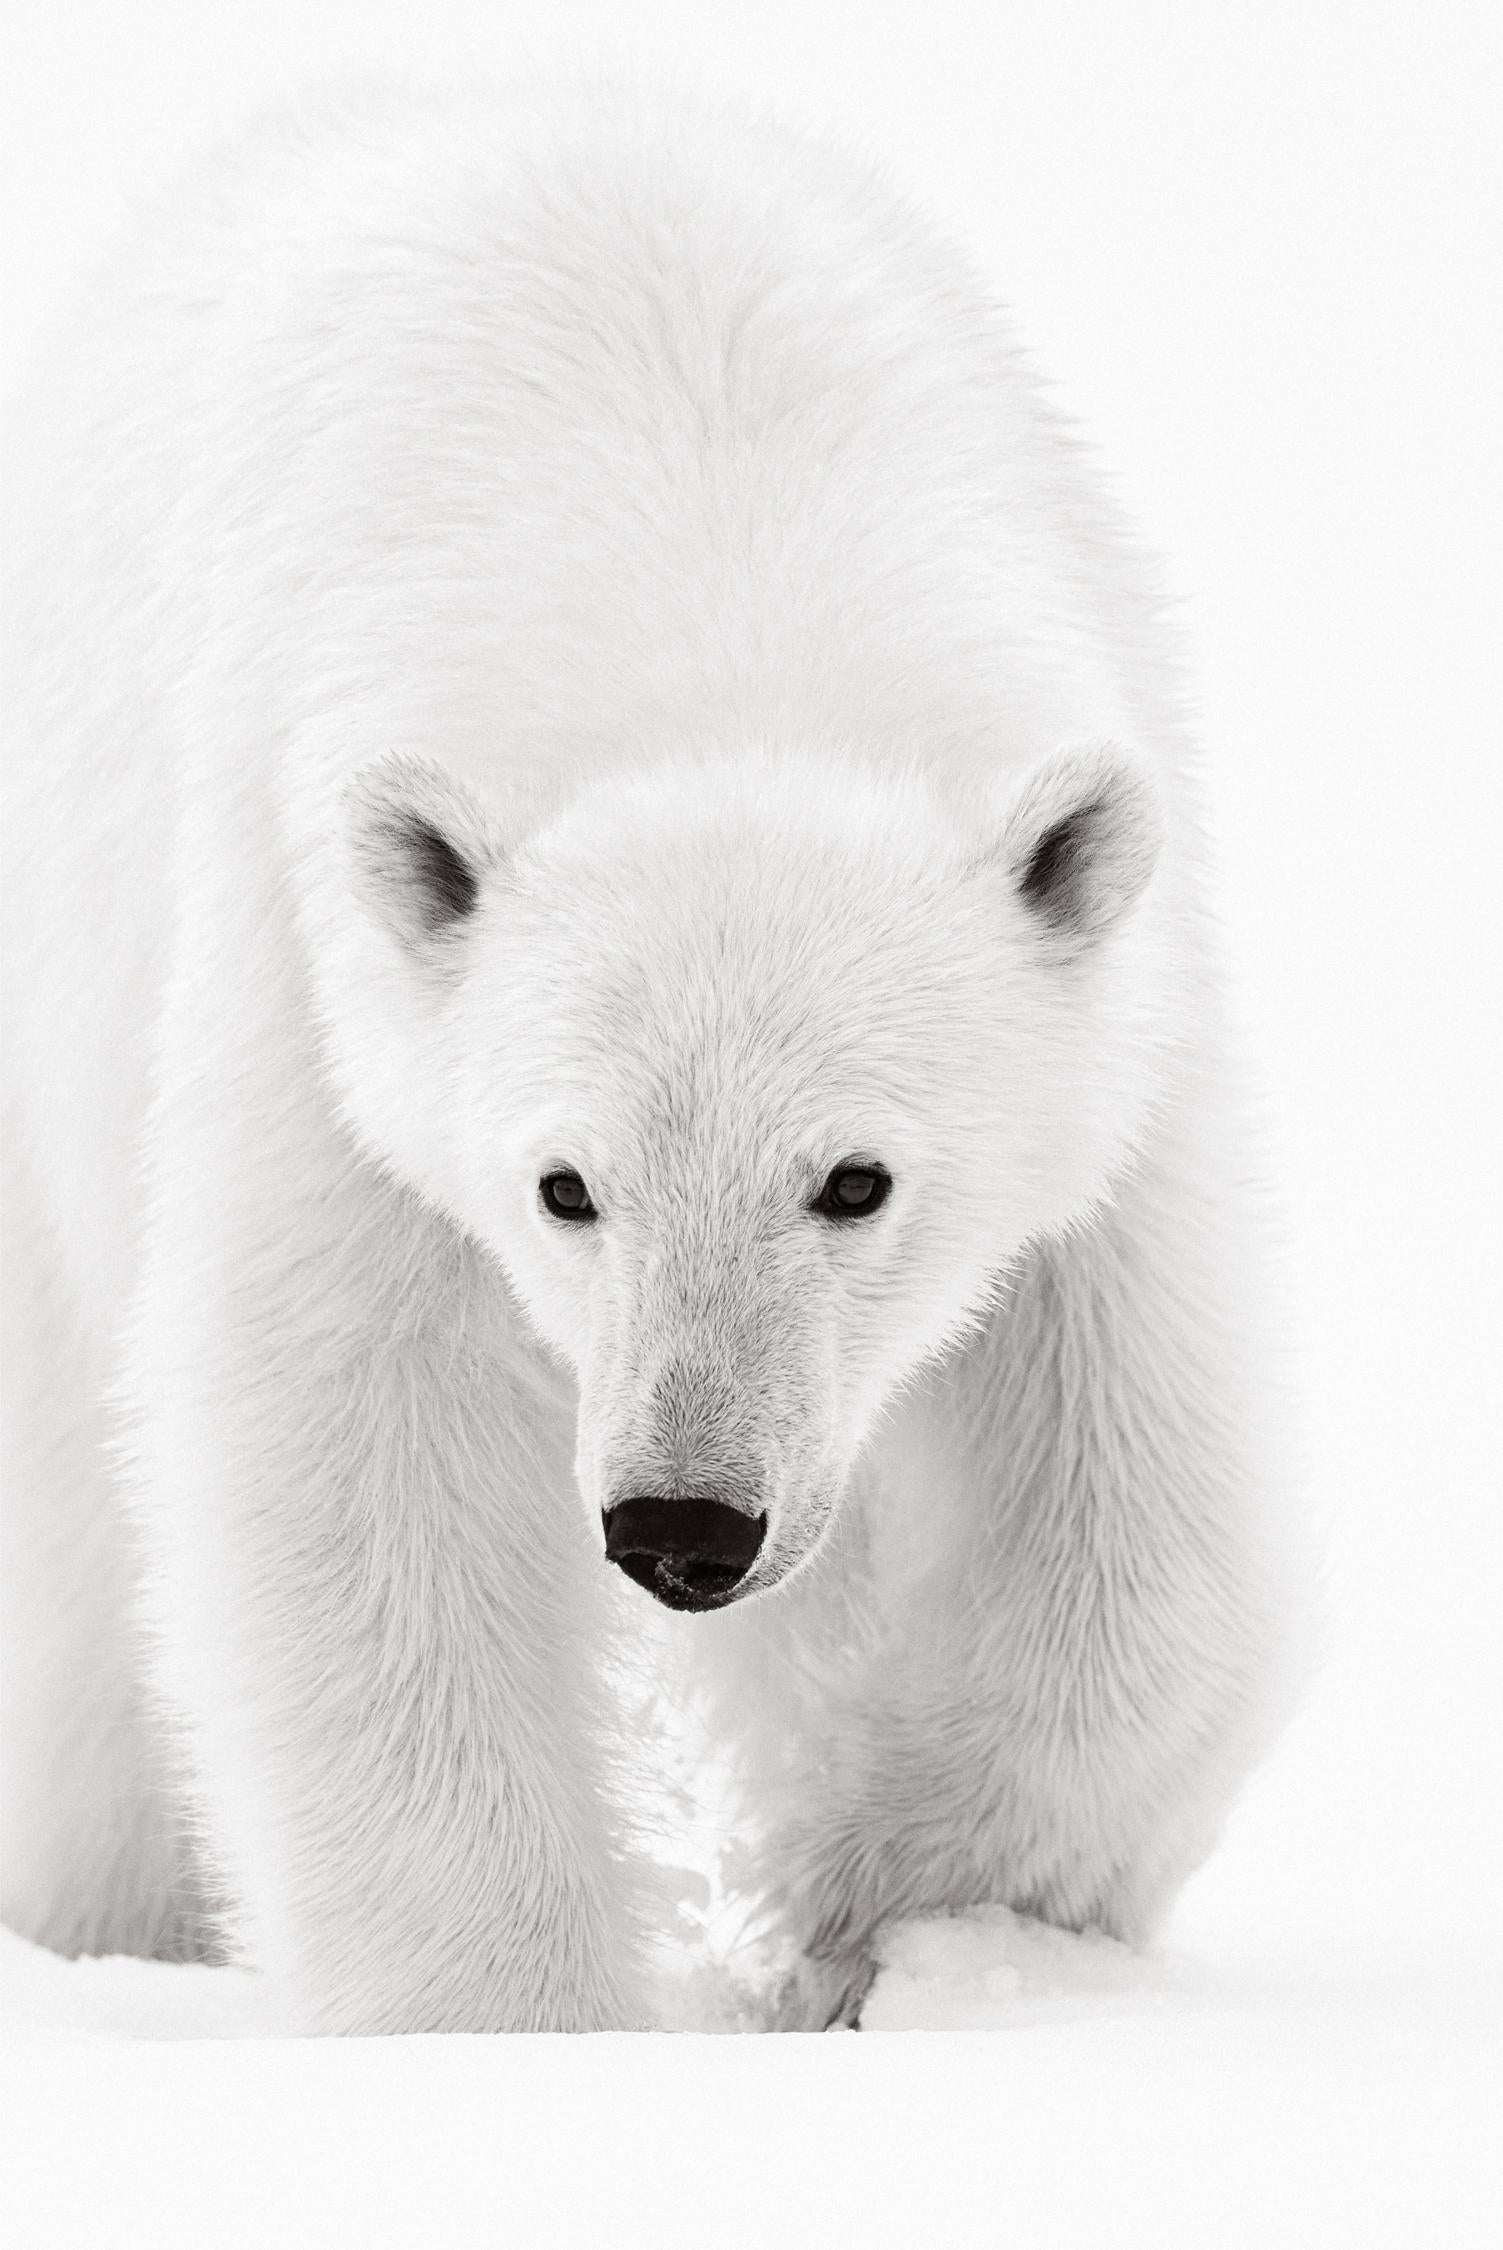 Black and White Photograph Drew Doggett - Portrait intime d'un ours polaire, photographie en noir et blanc